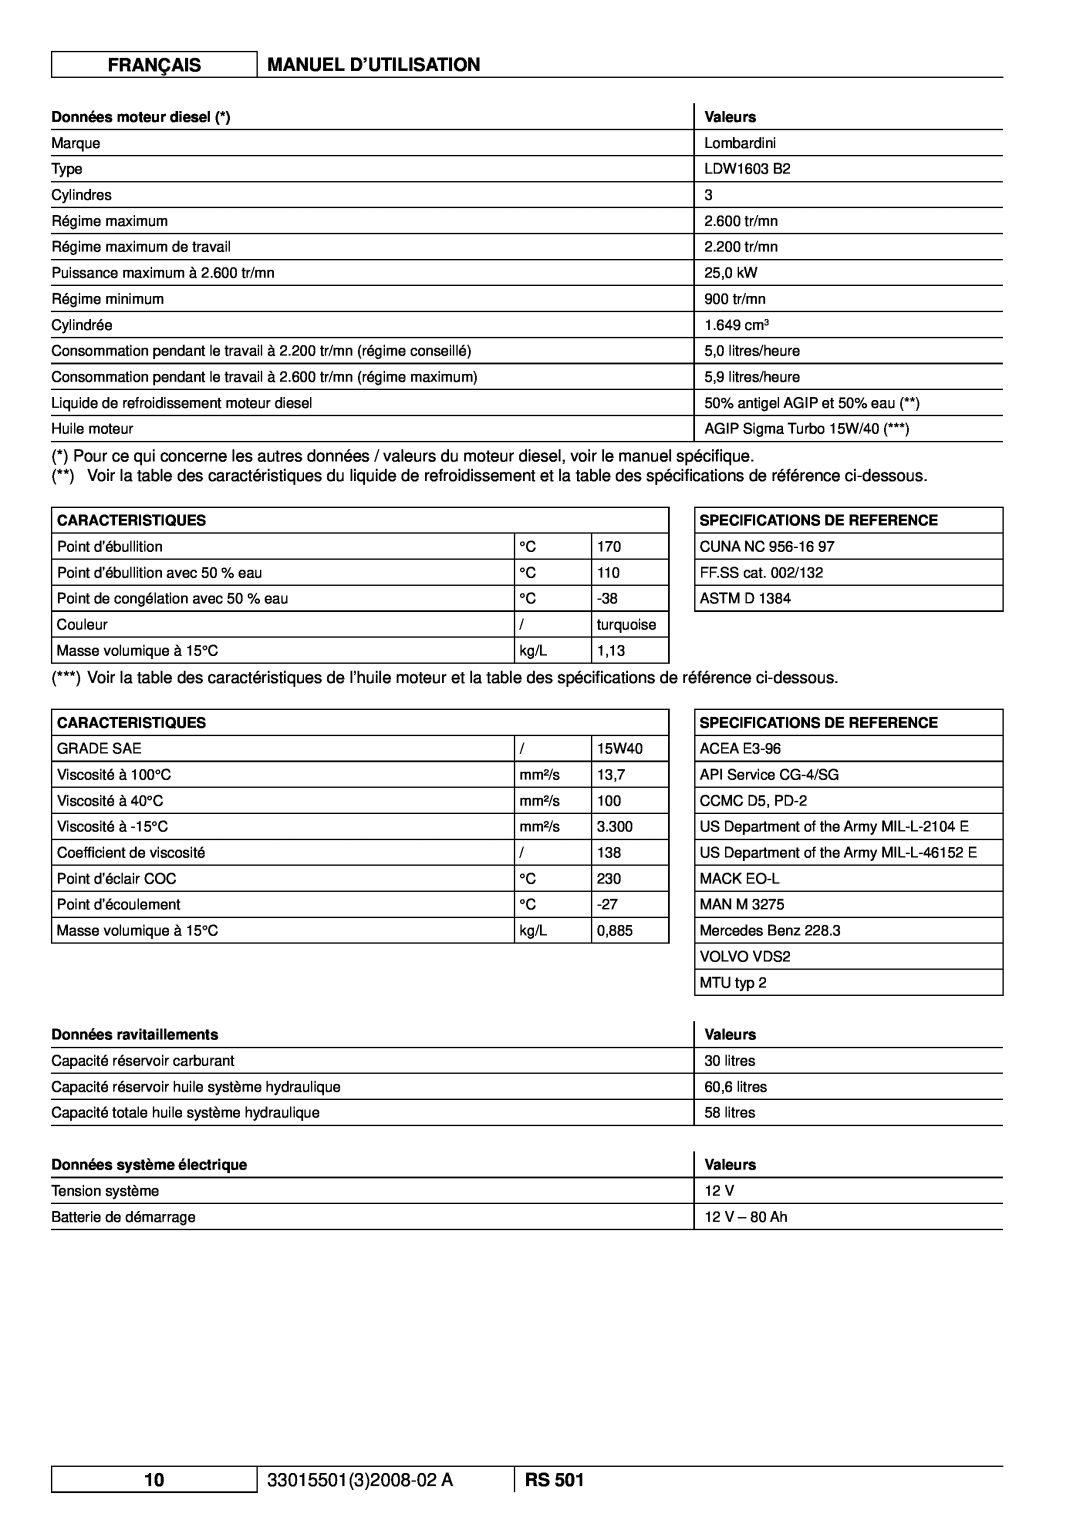 Nilfisk-ALTO RS 501 manuel dutilisation Français, Manuel D’Utilisation, 3301550132008-02A, Données moteur diesel 